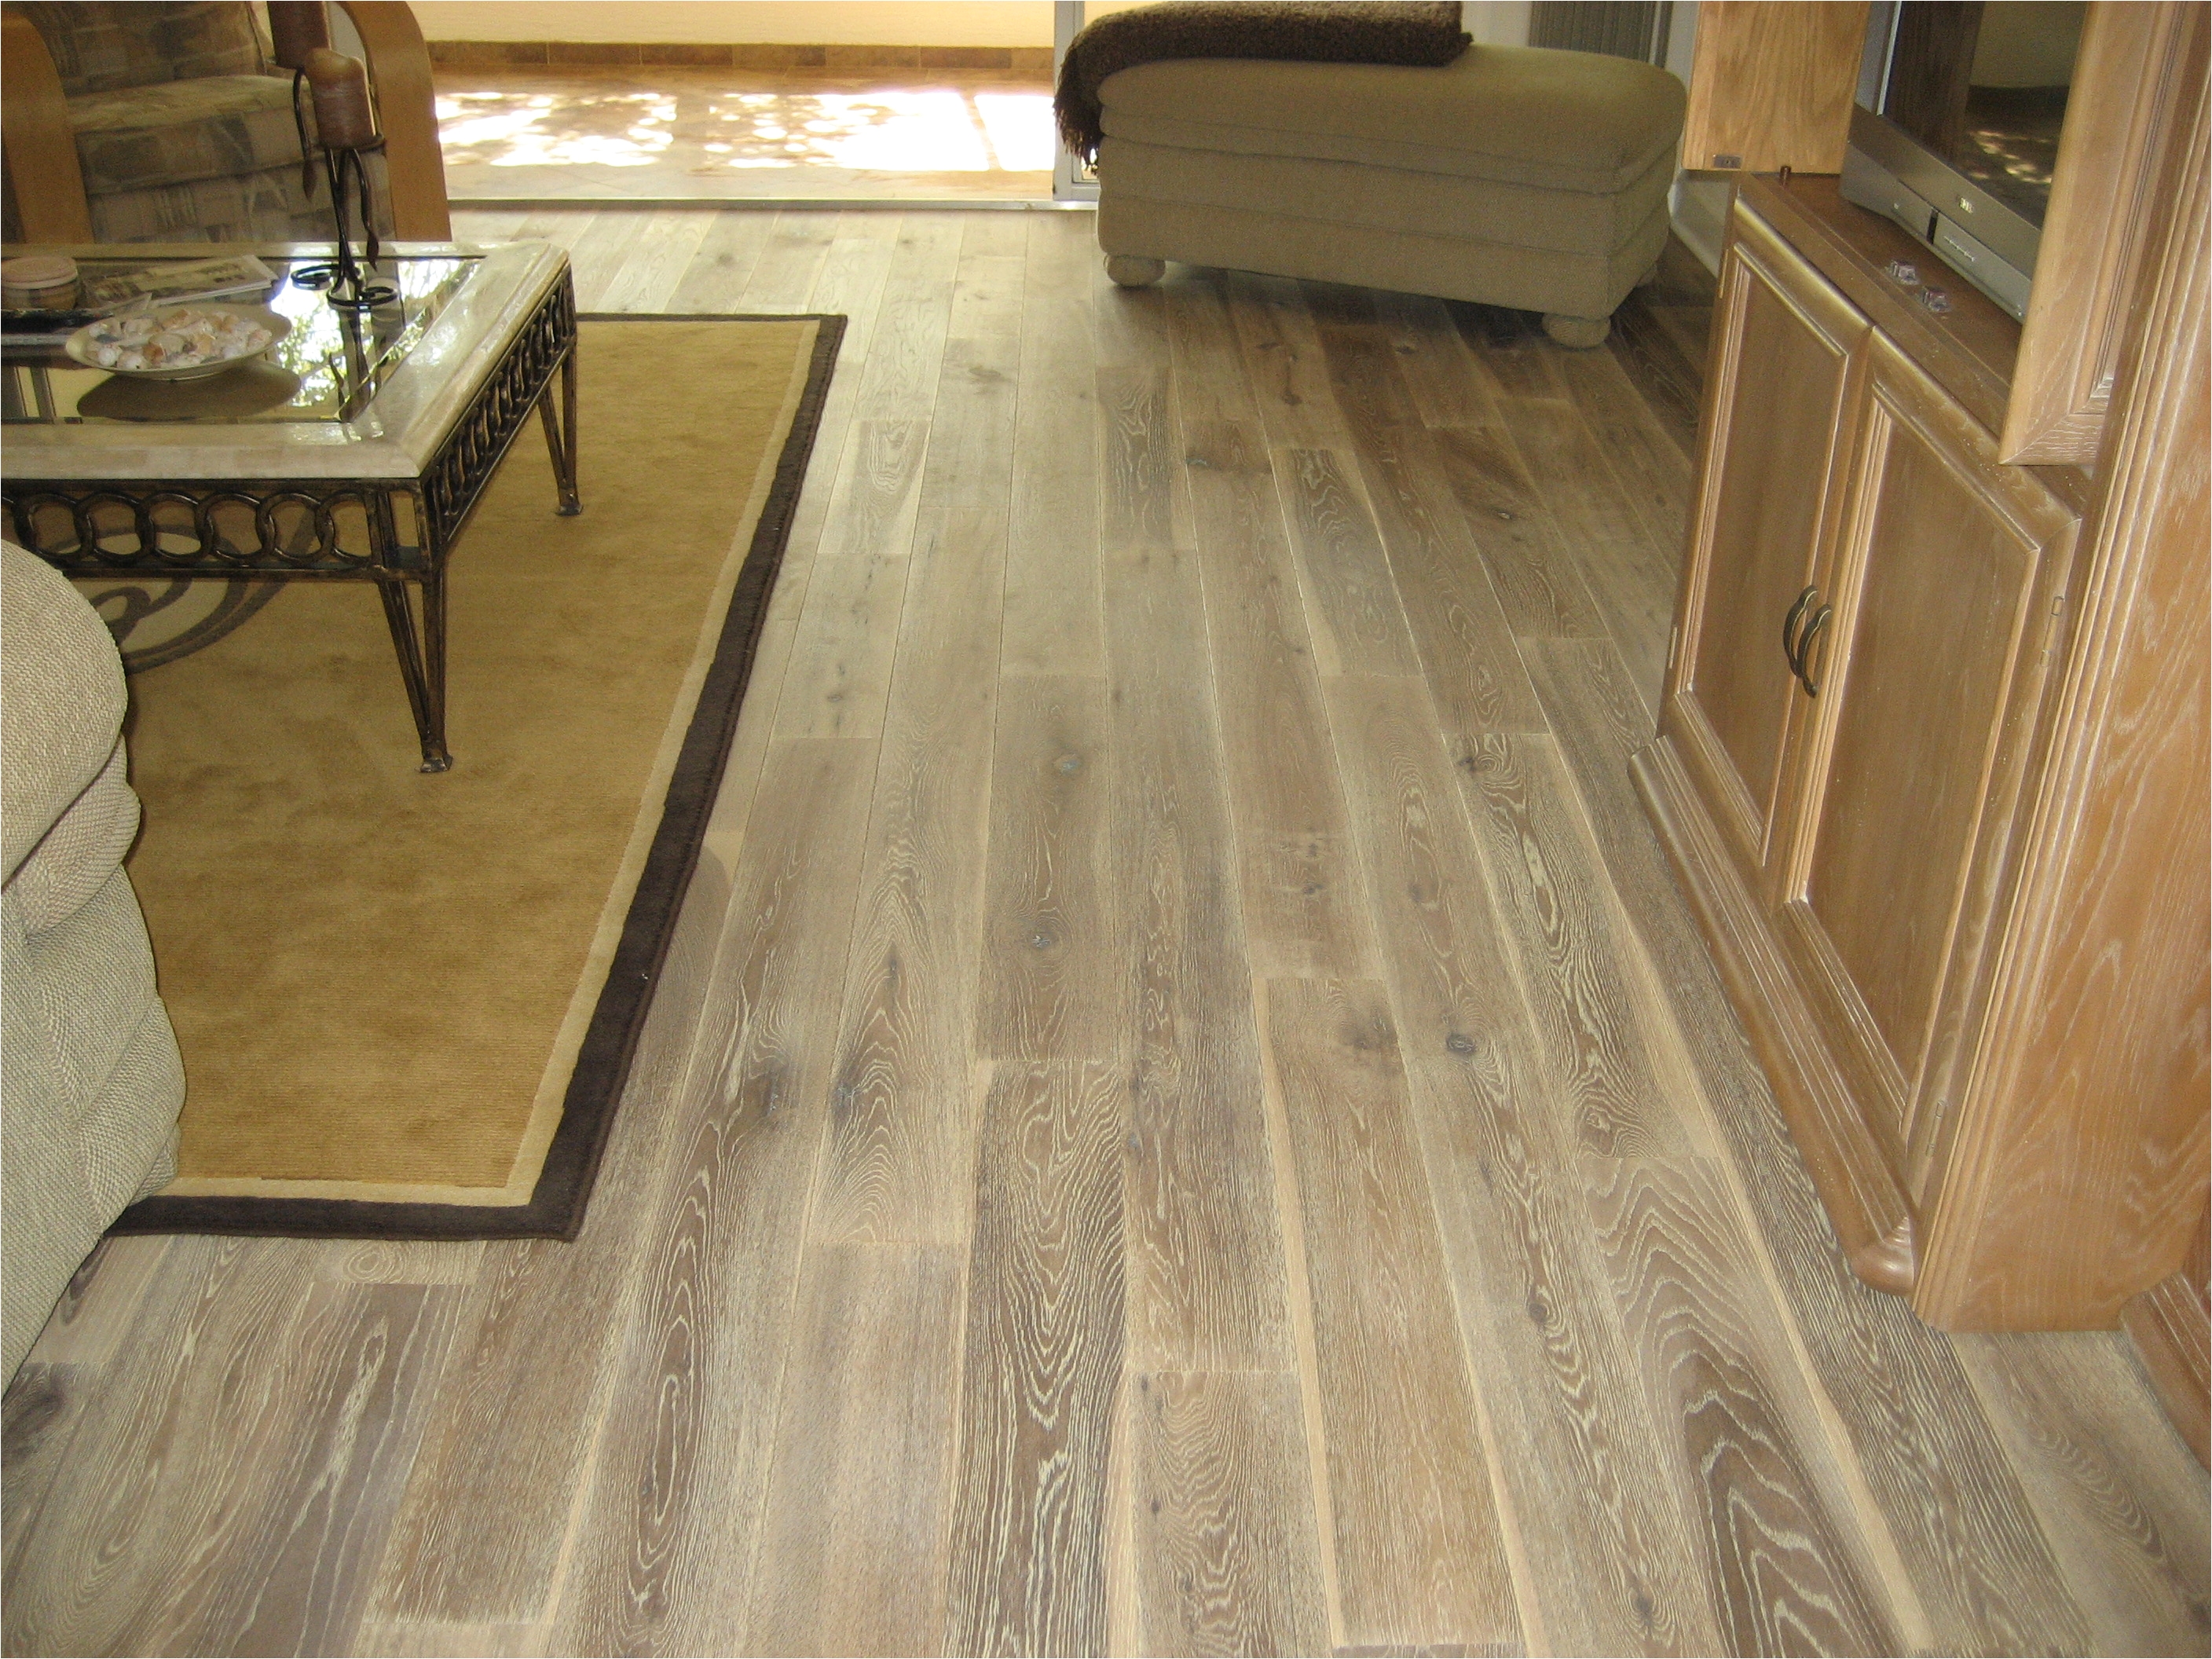 Concrete Floor Looks Like Wood Planks Wood Floor Ceramic Tiles Floor Ceramic Tile Wood Floor Flooring